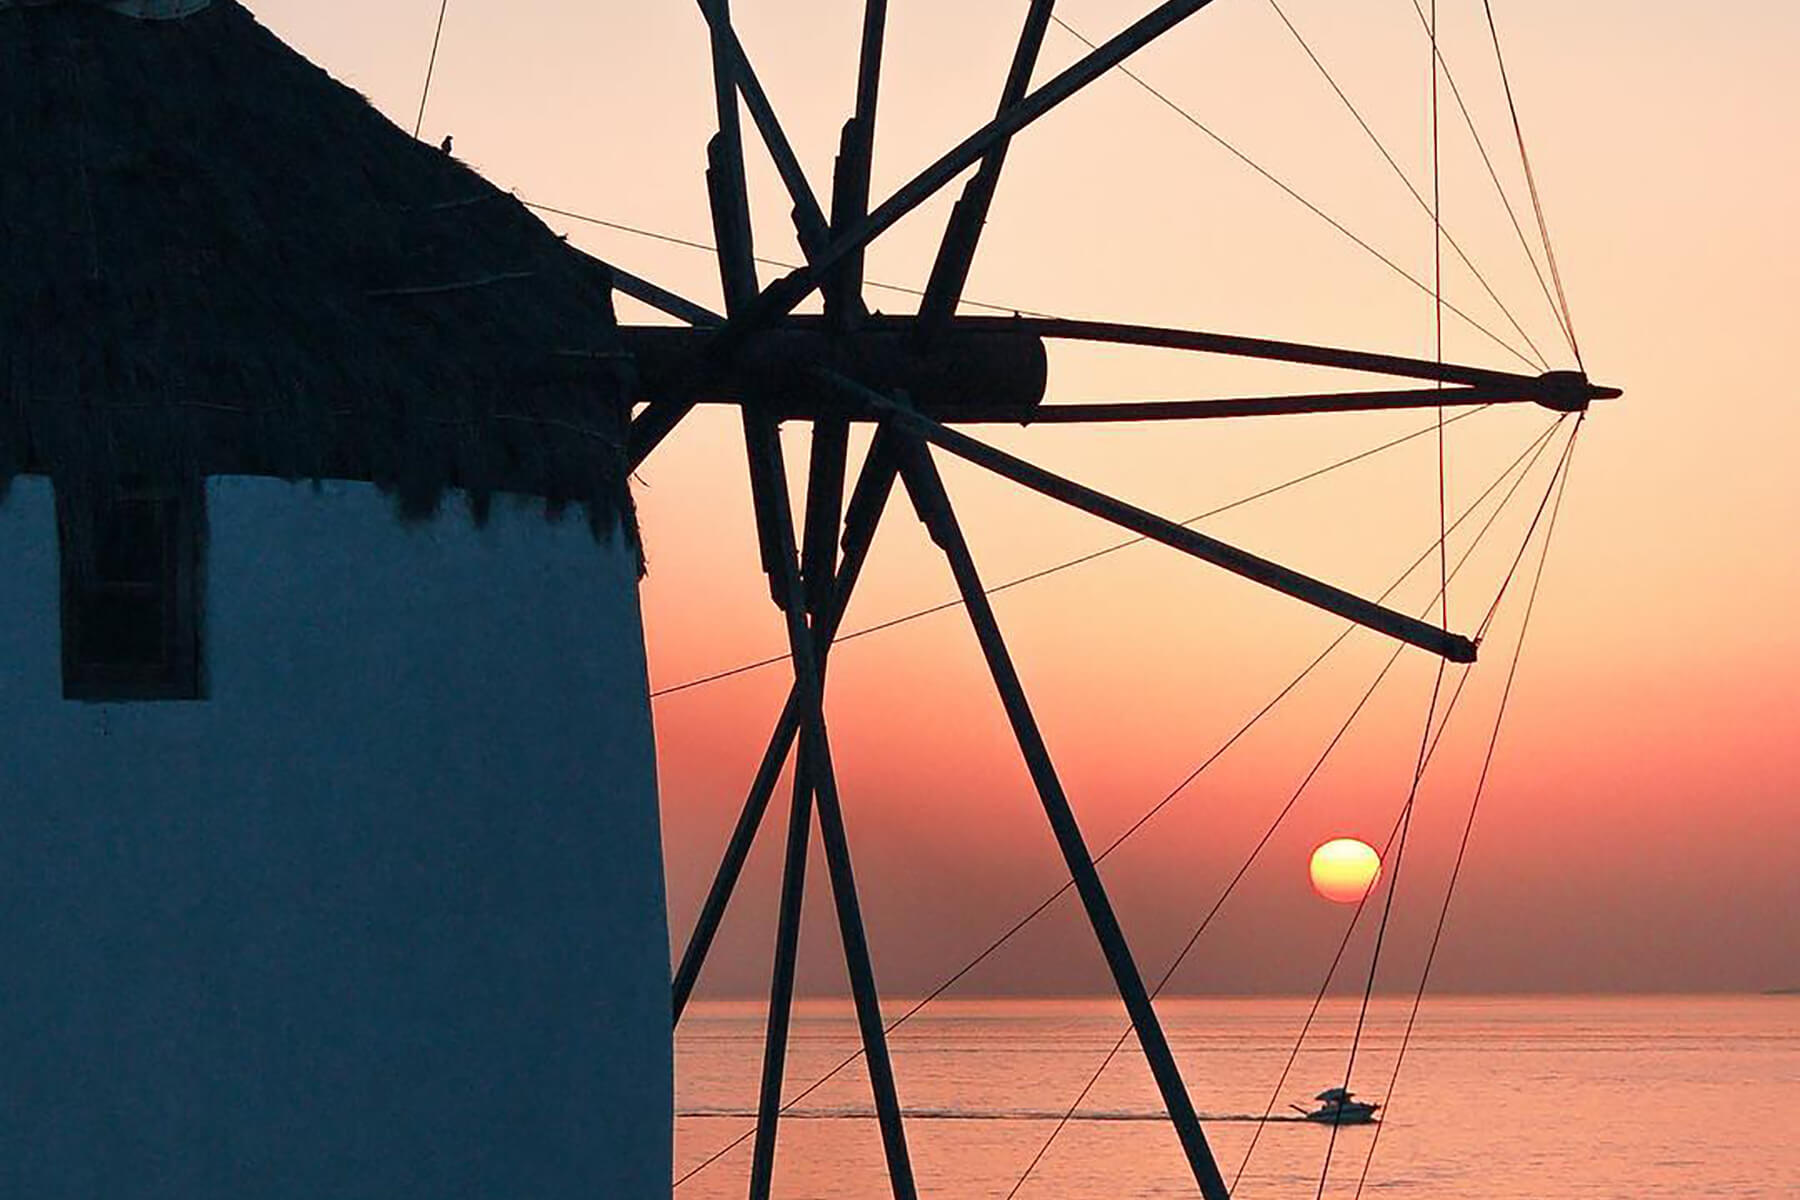 Mykonos Windmills - Sunset